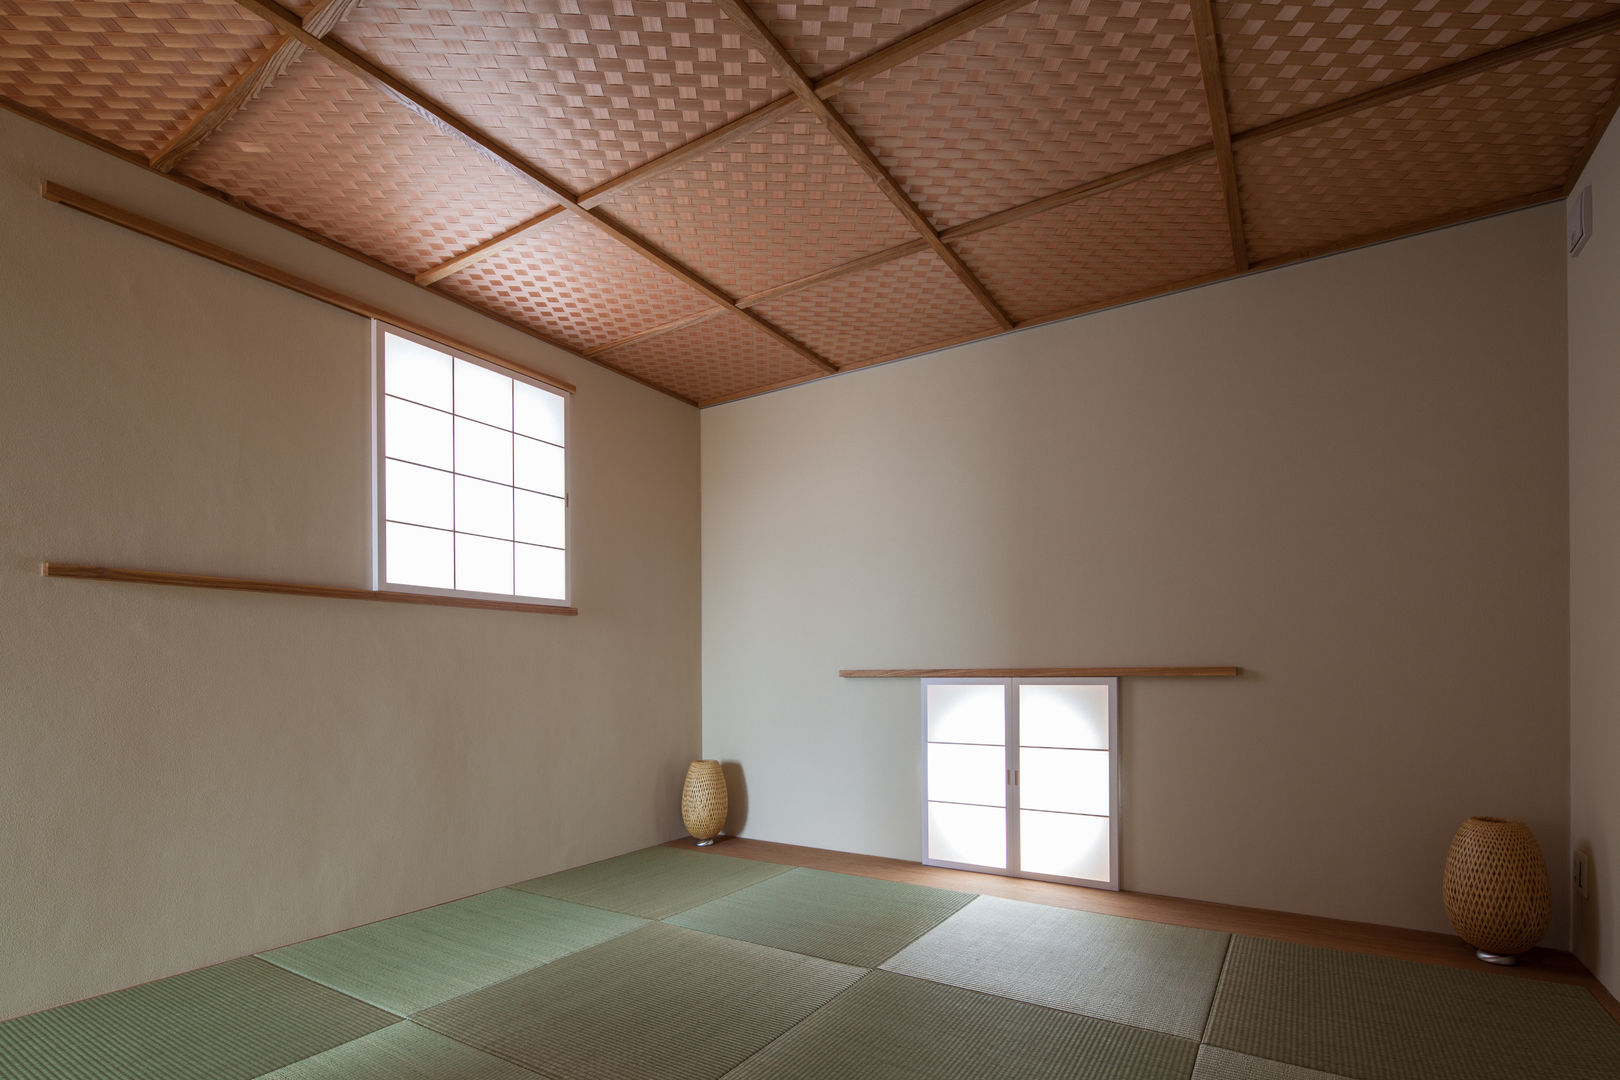 岸和田の家 和室 神谷徹建築設計事務所 オリジナルデザインの 多目的室